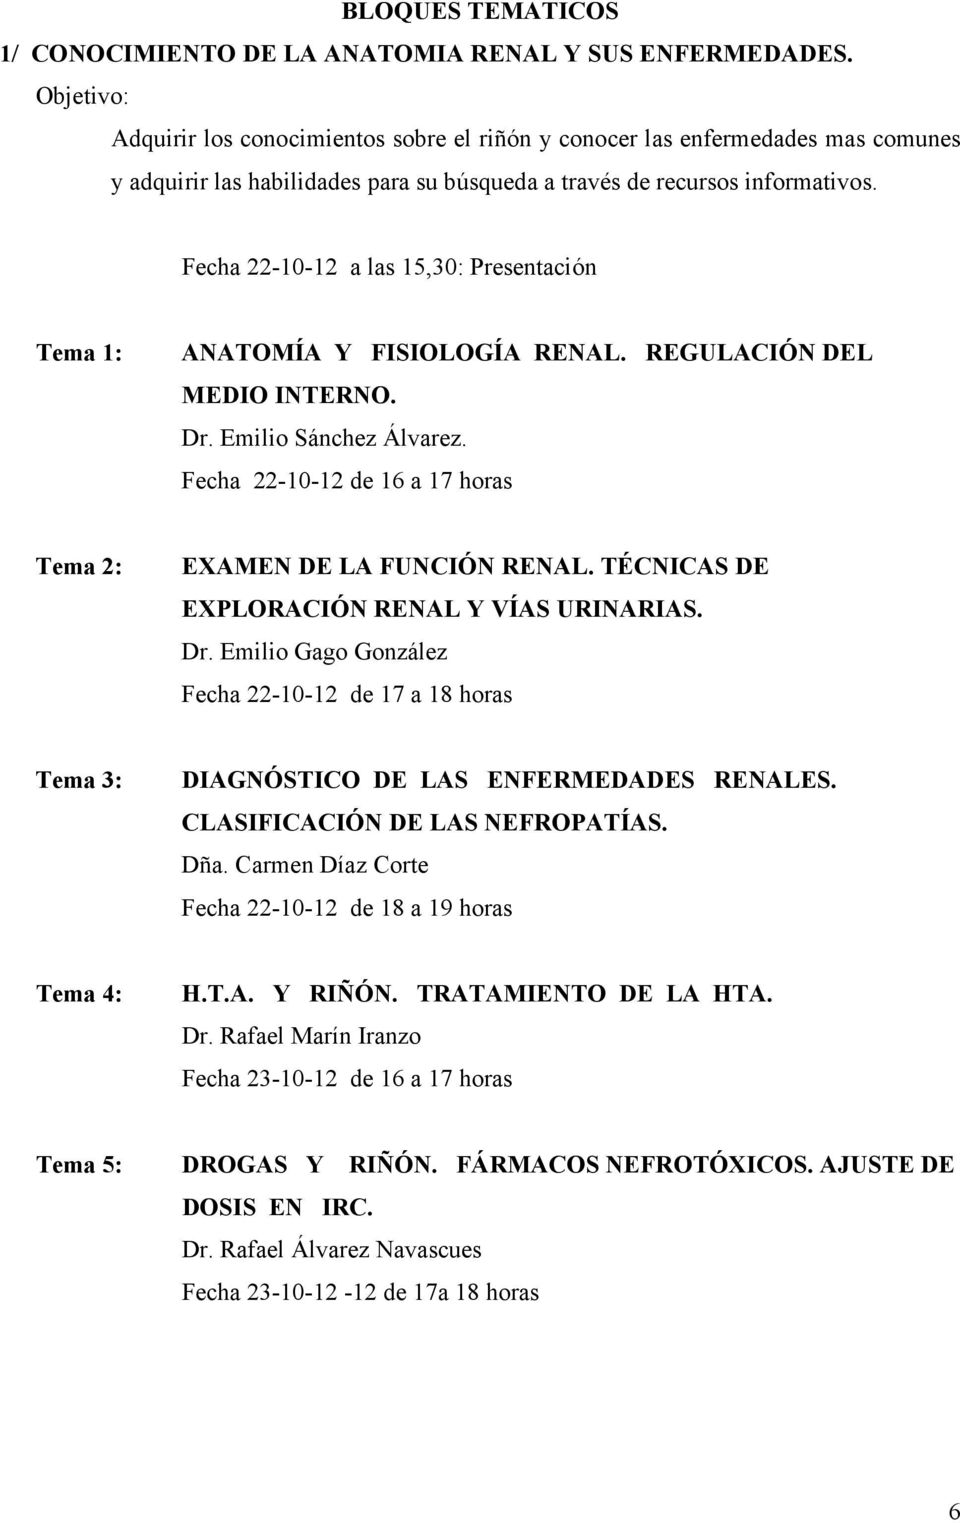 Fecha 22-10-12 a las 15,30: Presentación Tema 1: ANATOMÍA Y FISIOLOGÍA RENAL. REGULACIÓN DEL MEDIO INTERNO. Dr. Emilio Sánchez Álvarez.